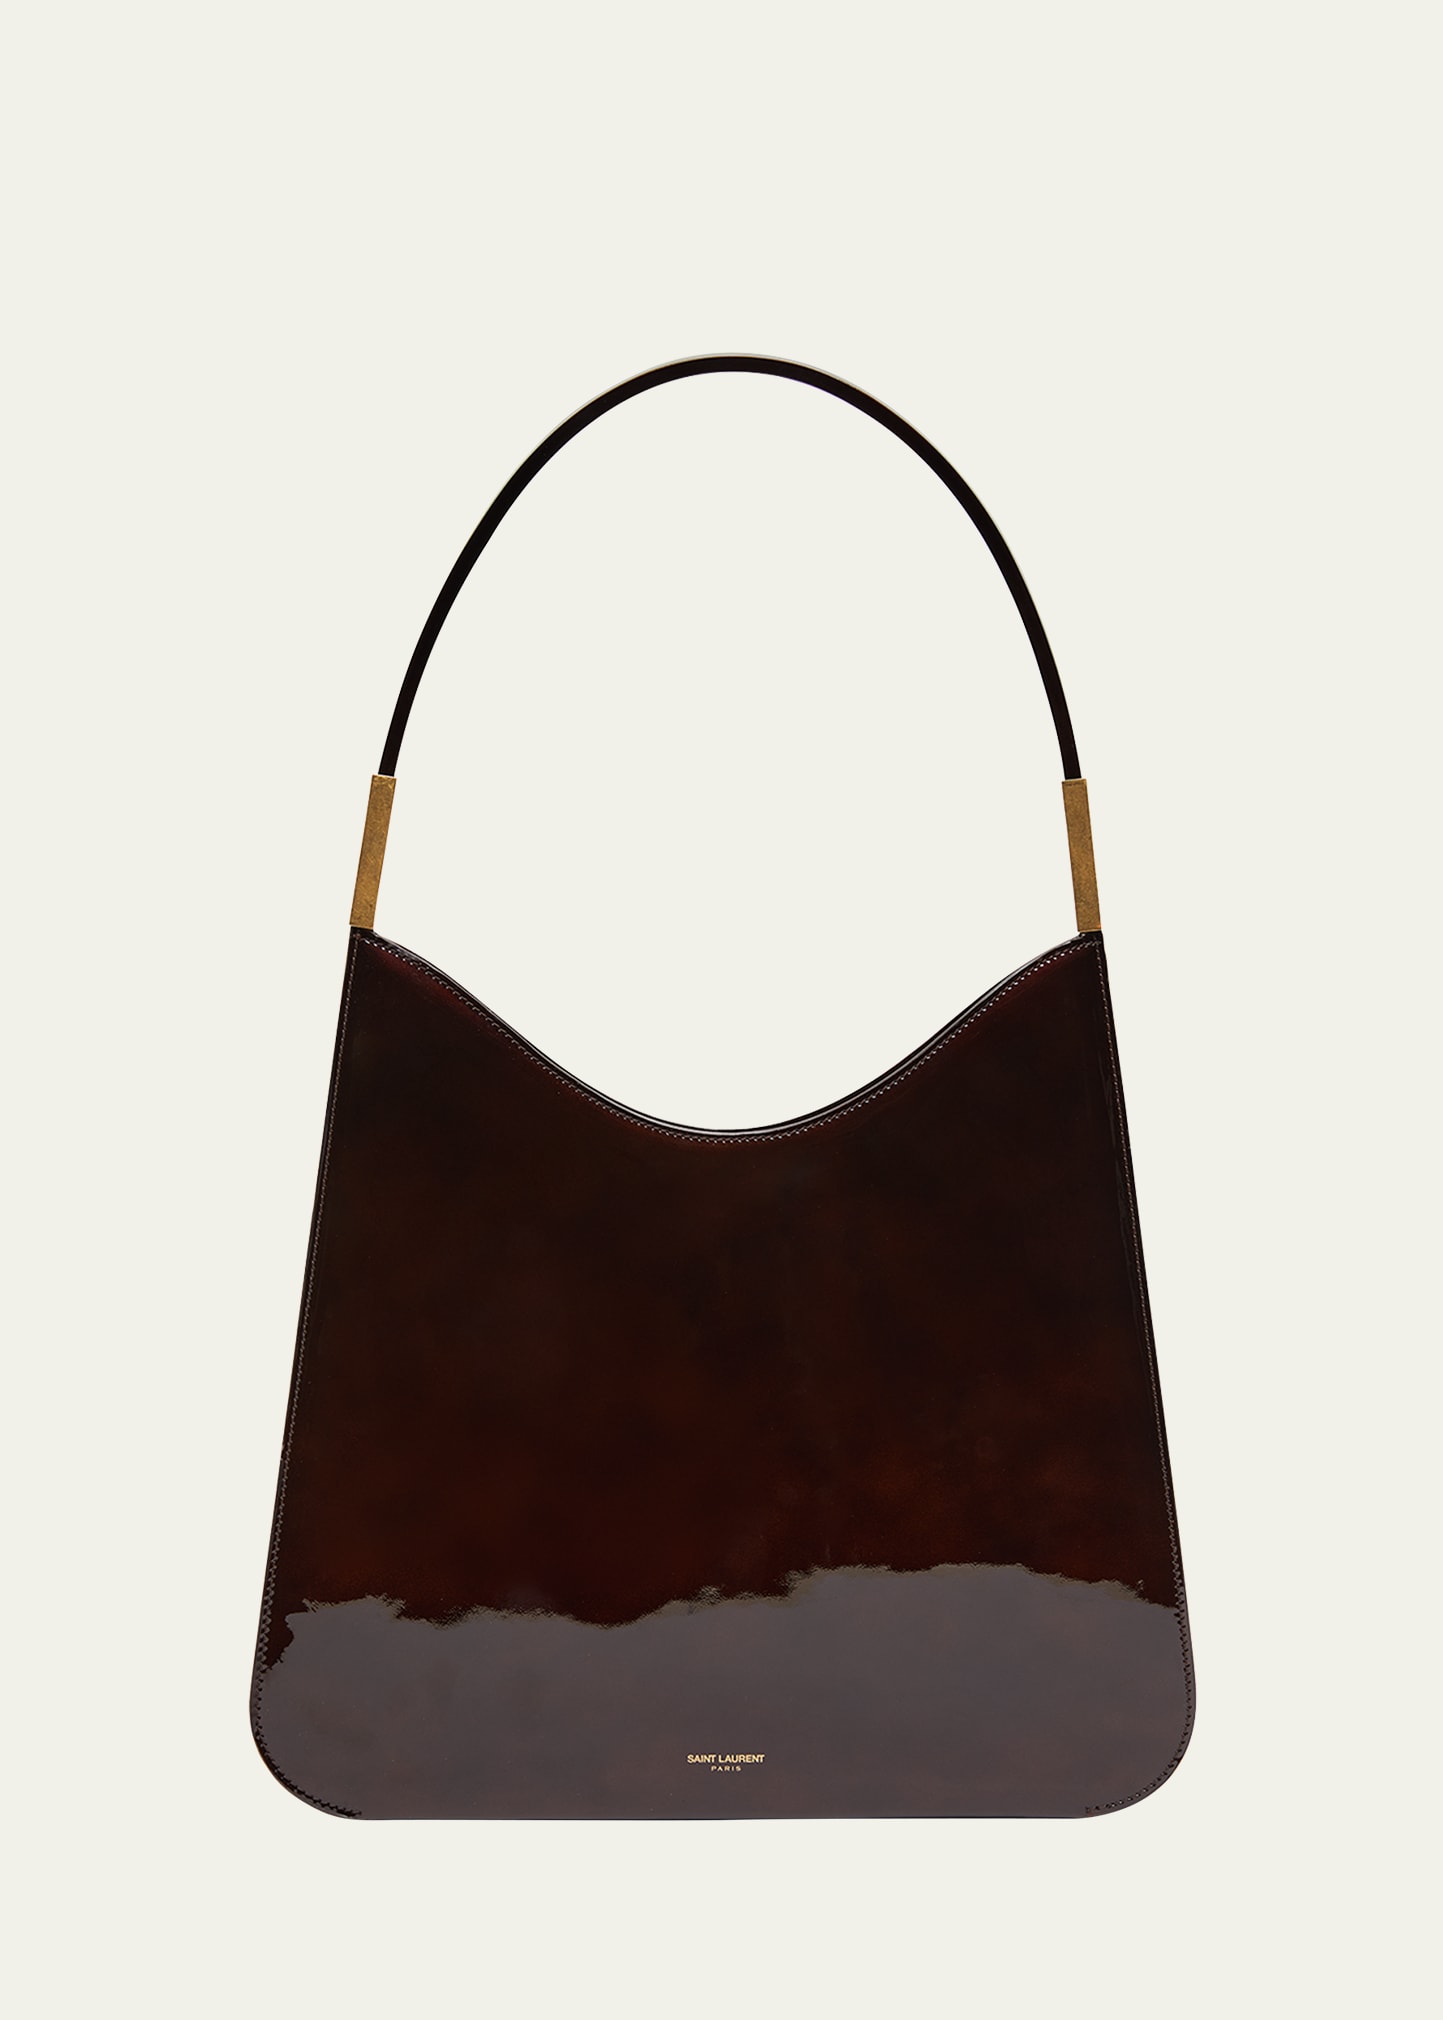 Saint Laurent Sadie Shoulder Bag in Patent Leather | Bergdorf Goodman